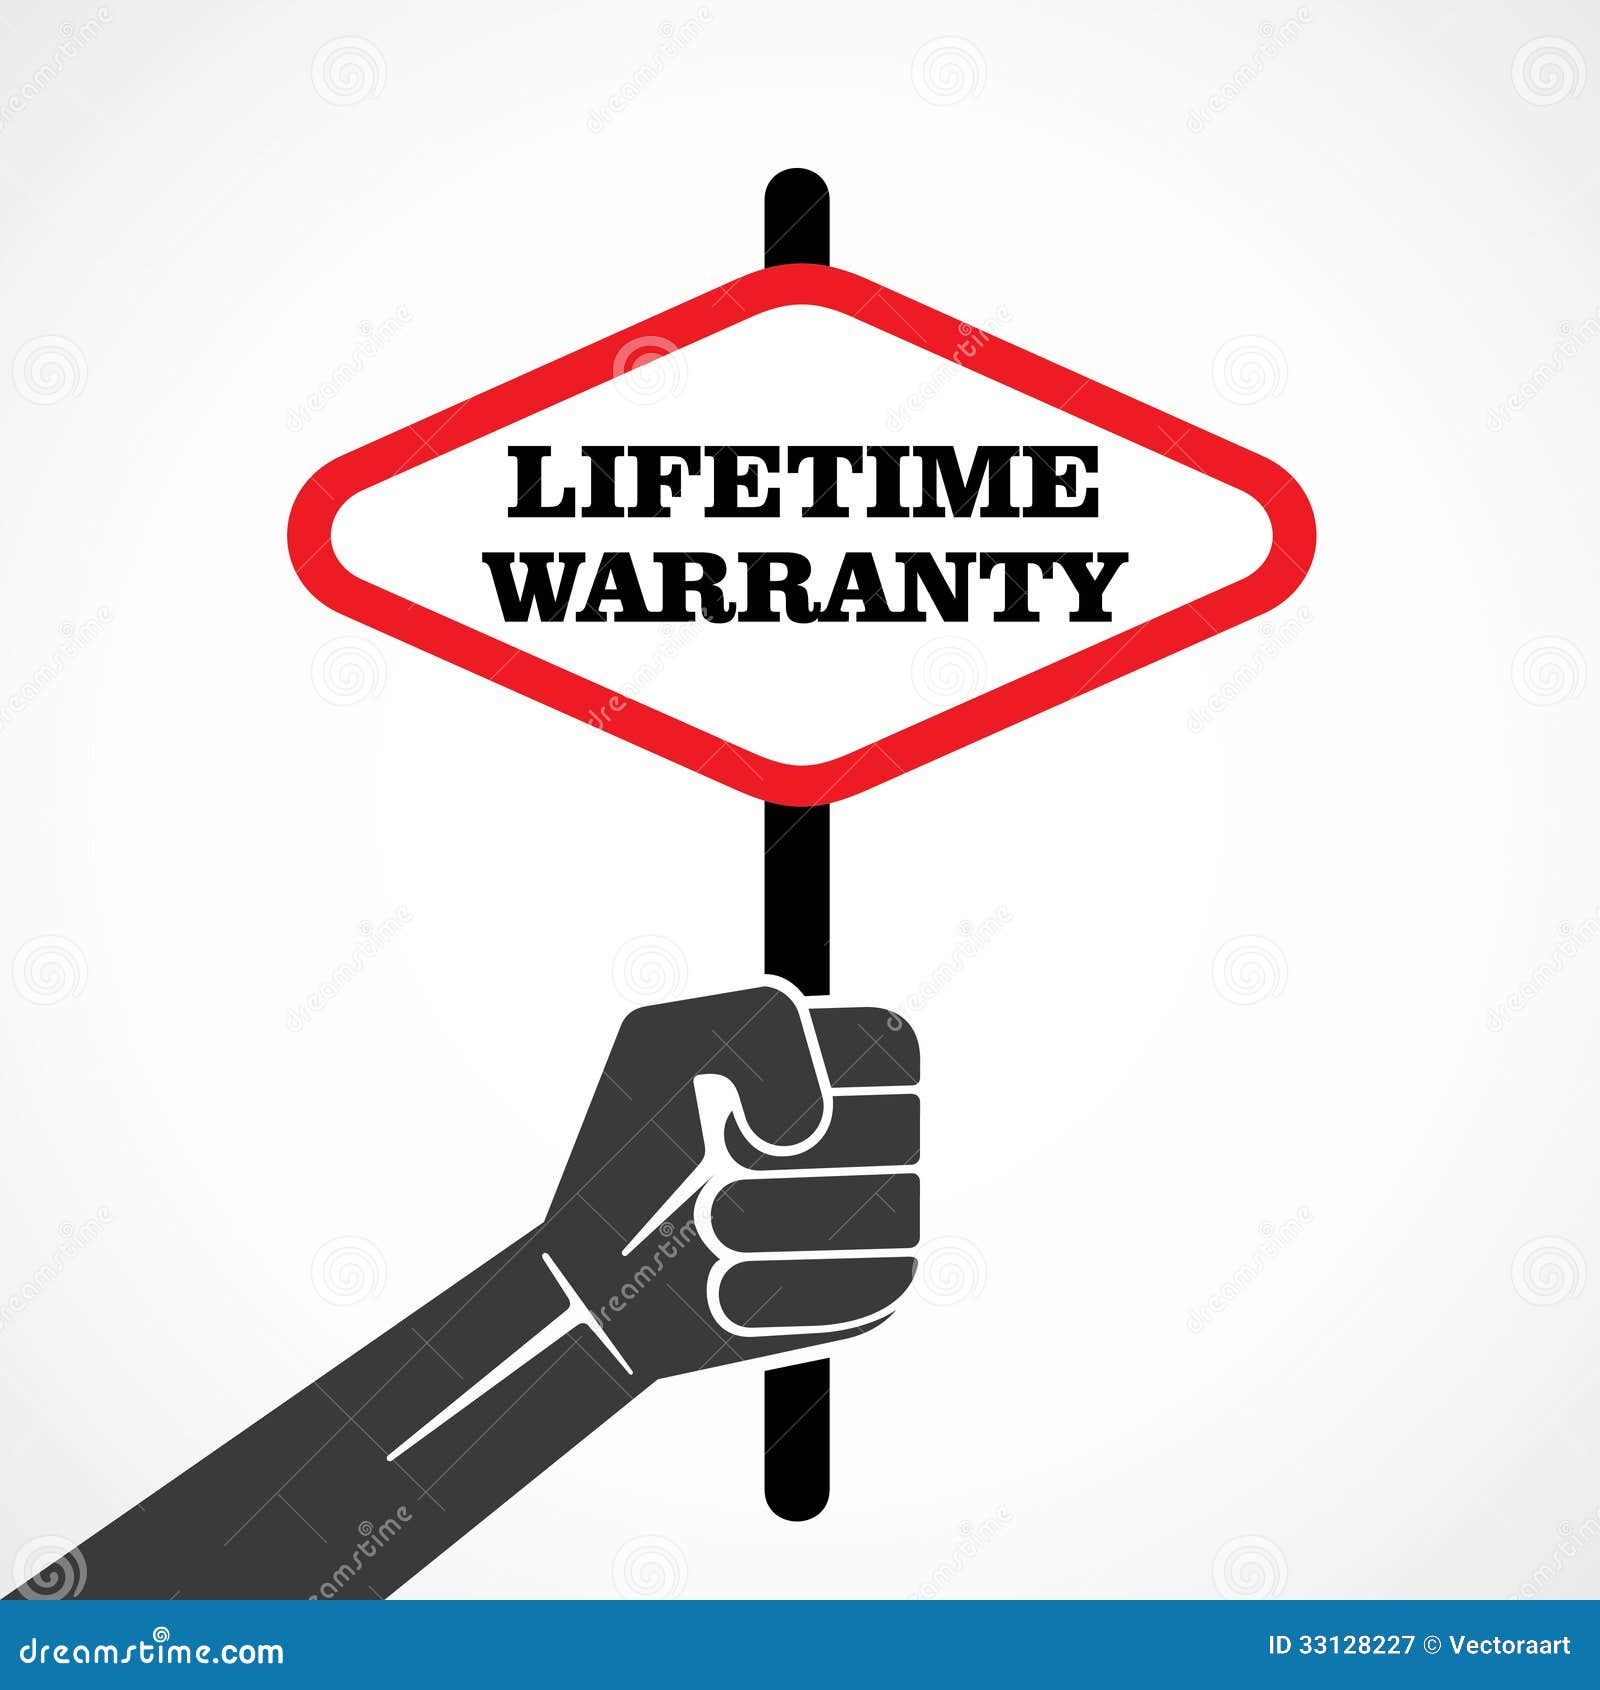 clipart warranty - photo #30